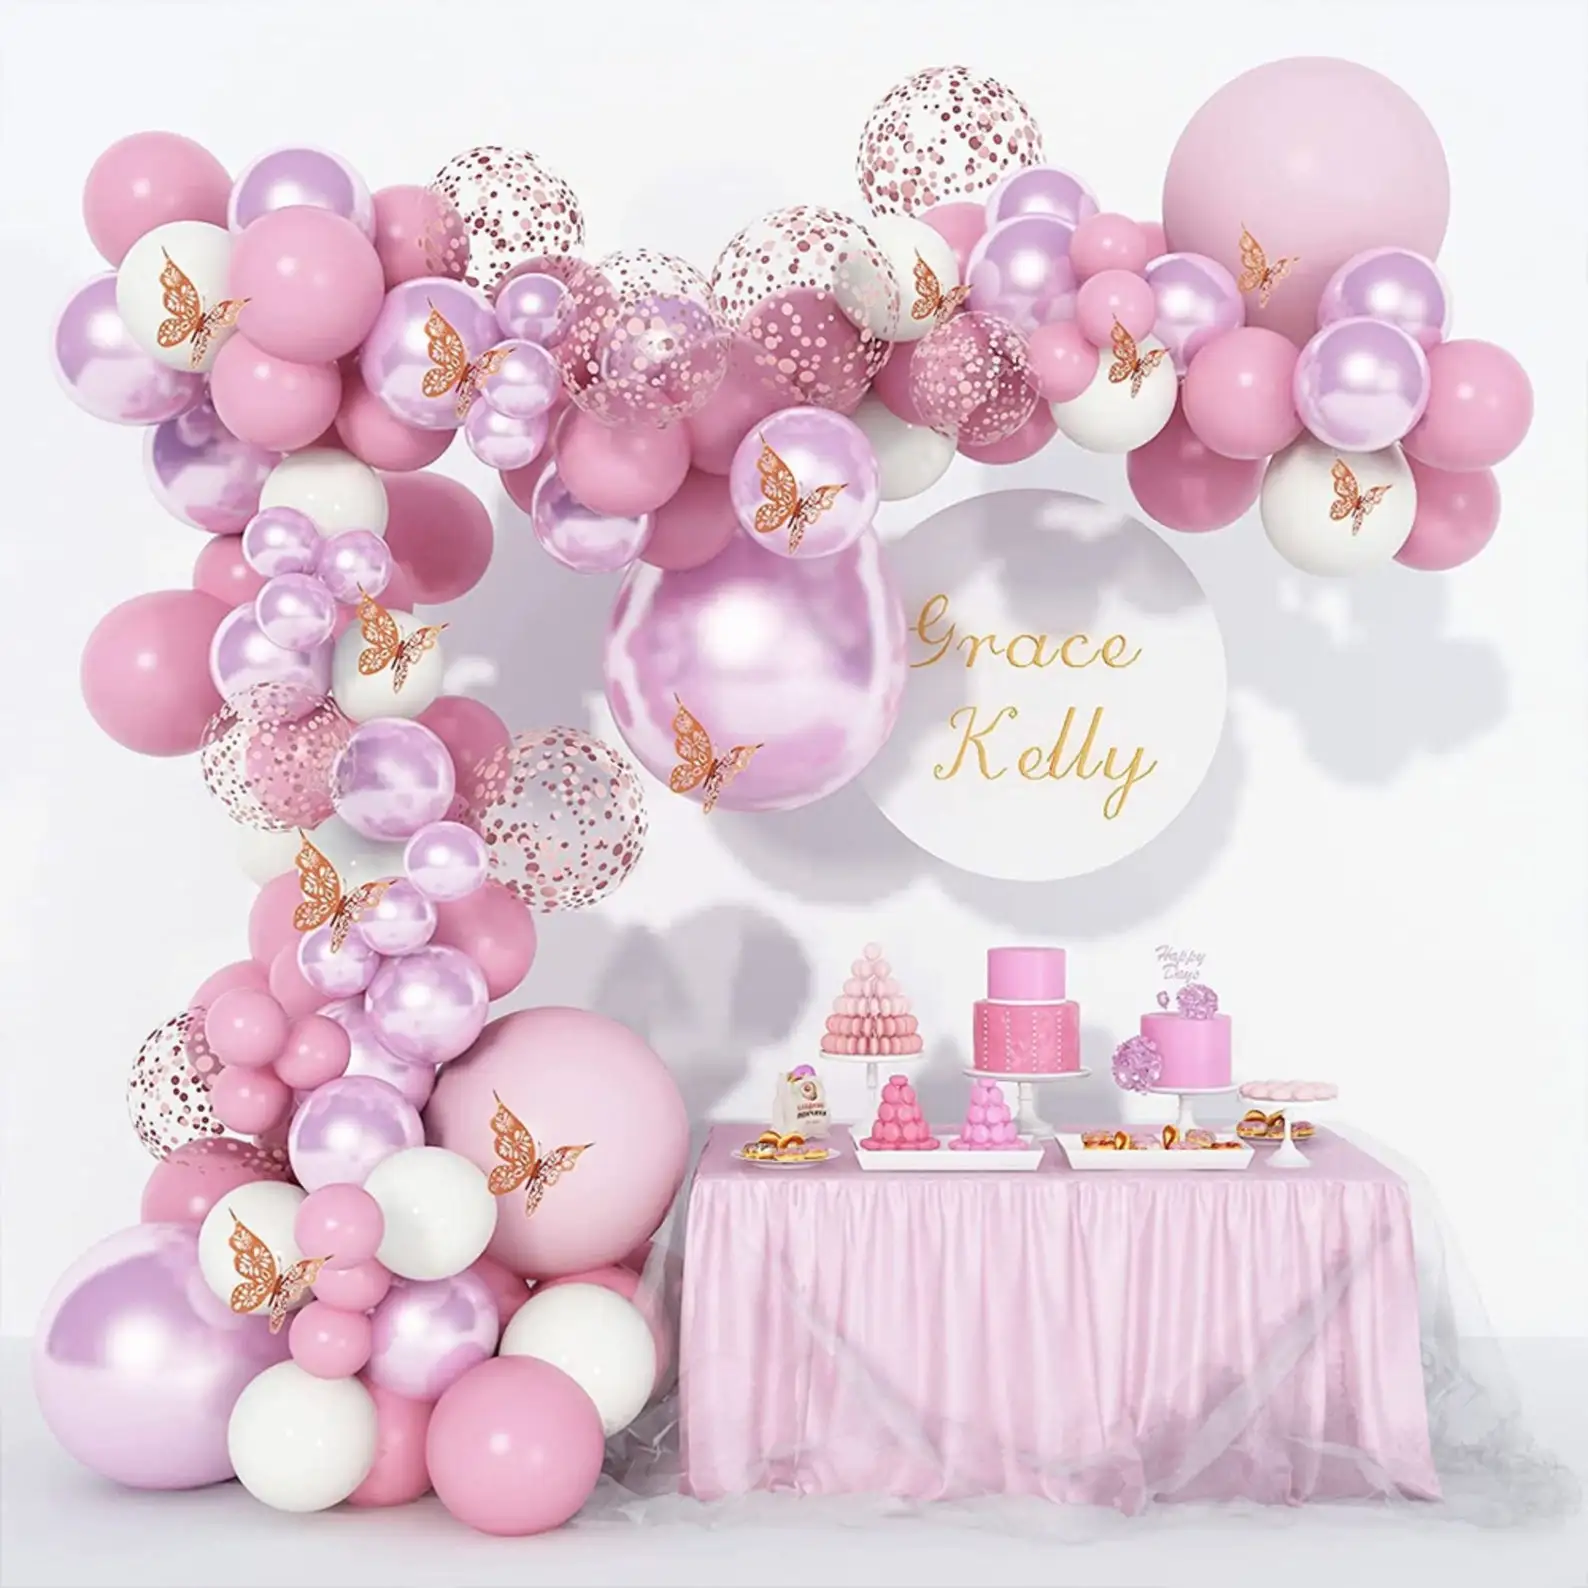 

Гирлянда с воздушными шарами, украшение для свадьбы, дня рождения, металлические хромированные шары с конфетти, из латекса, для детского праздника